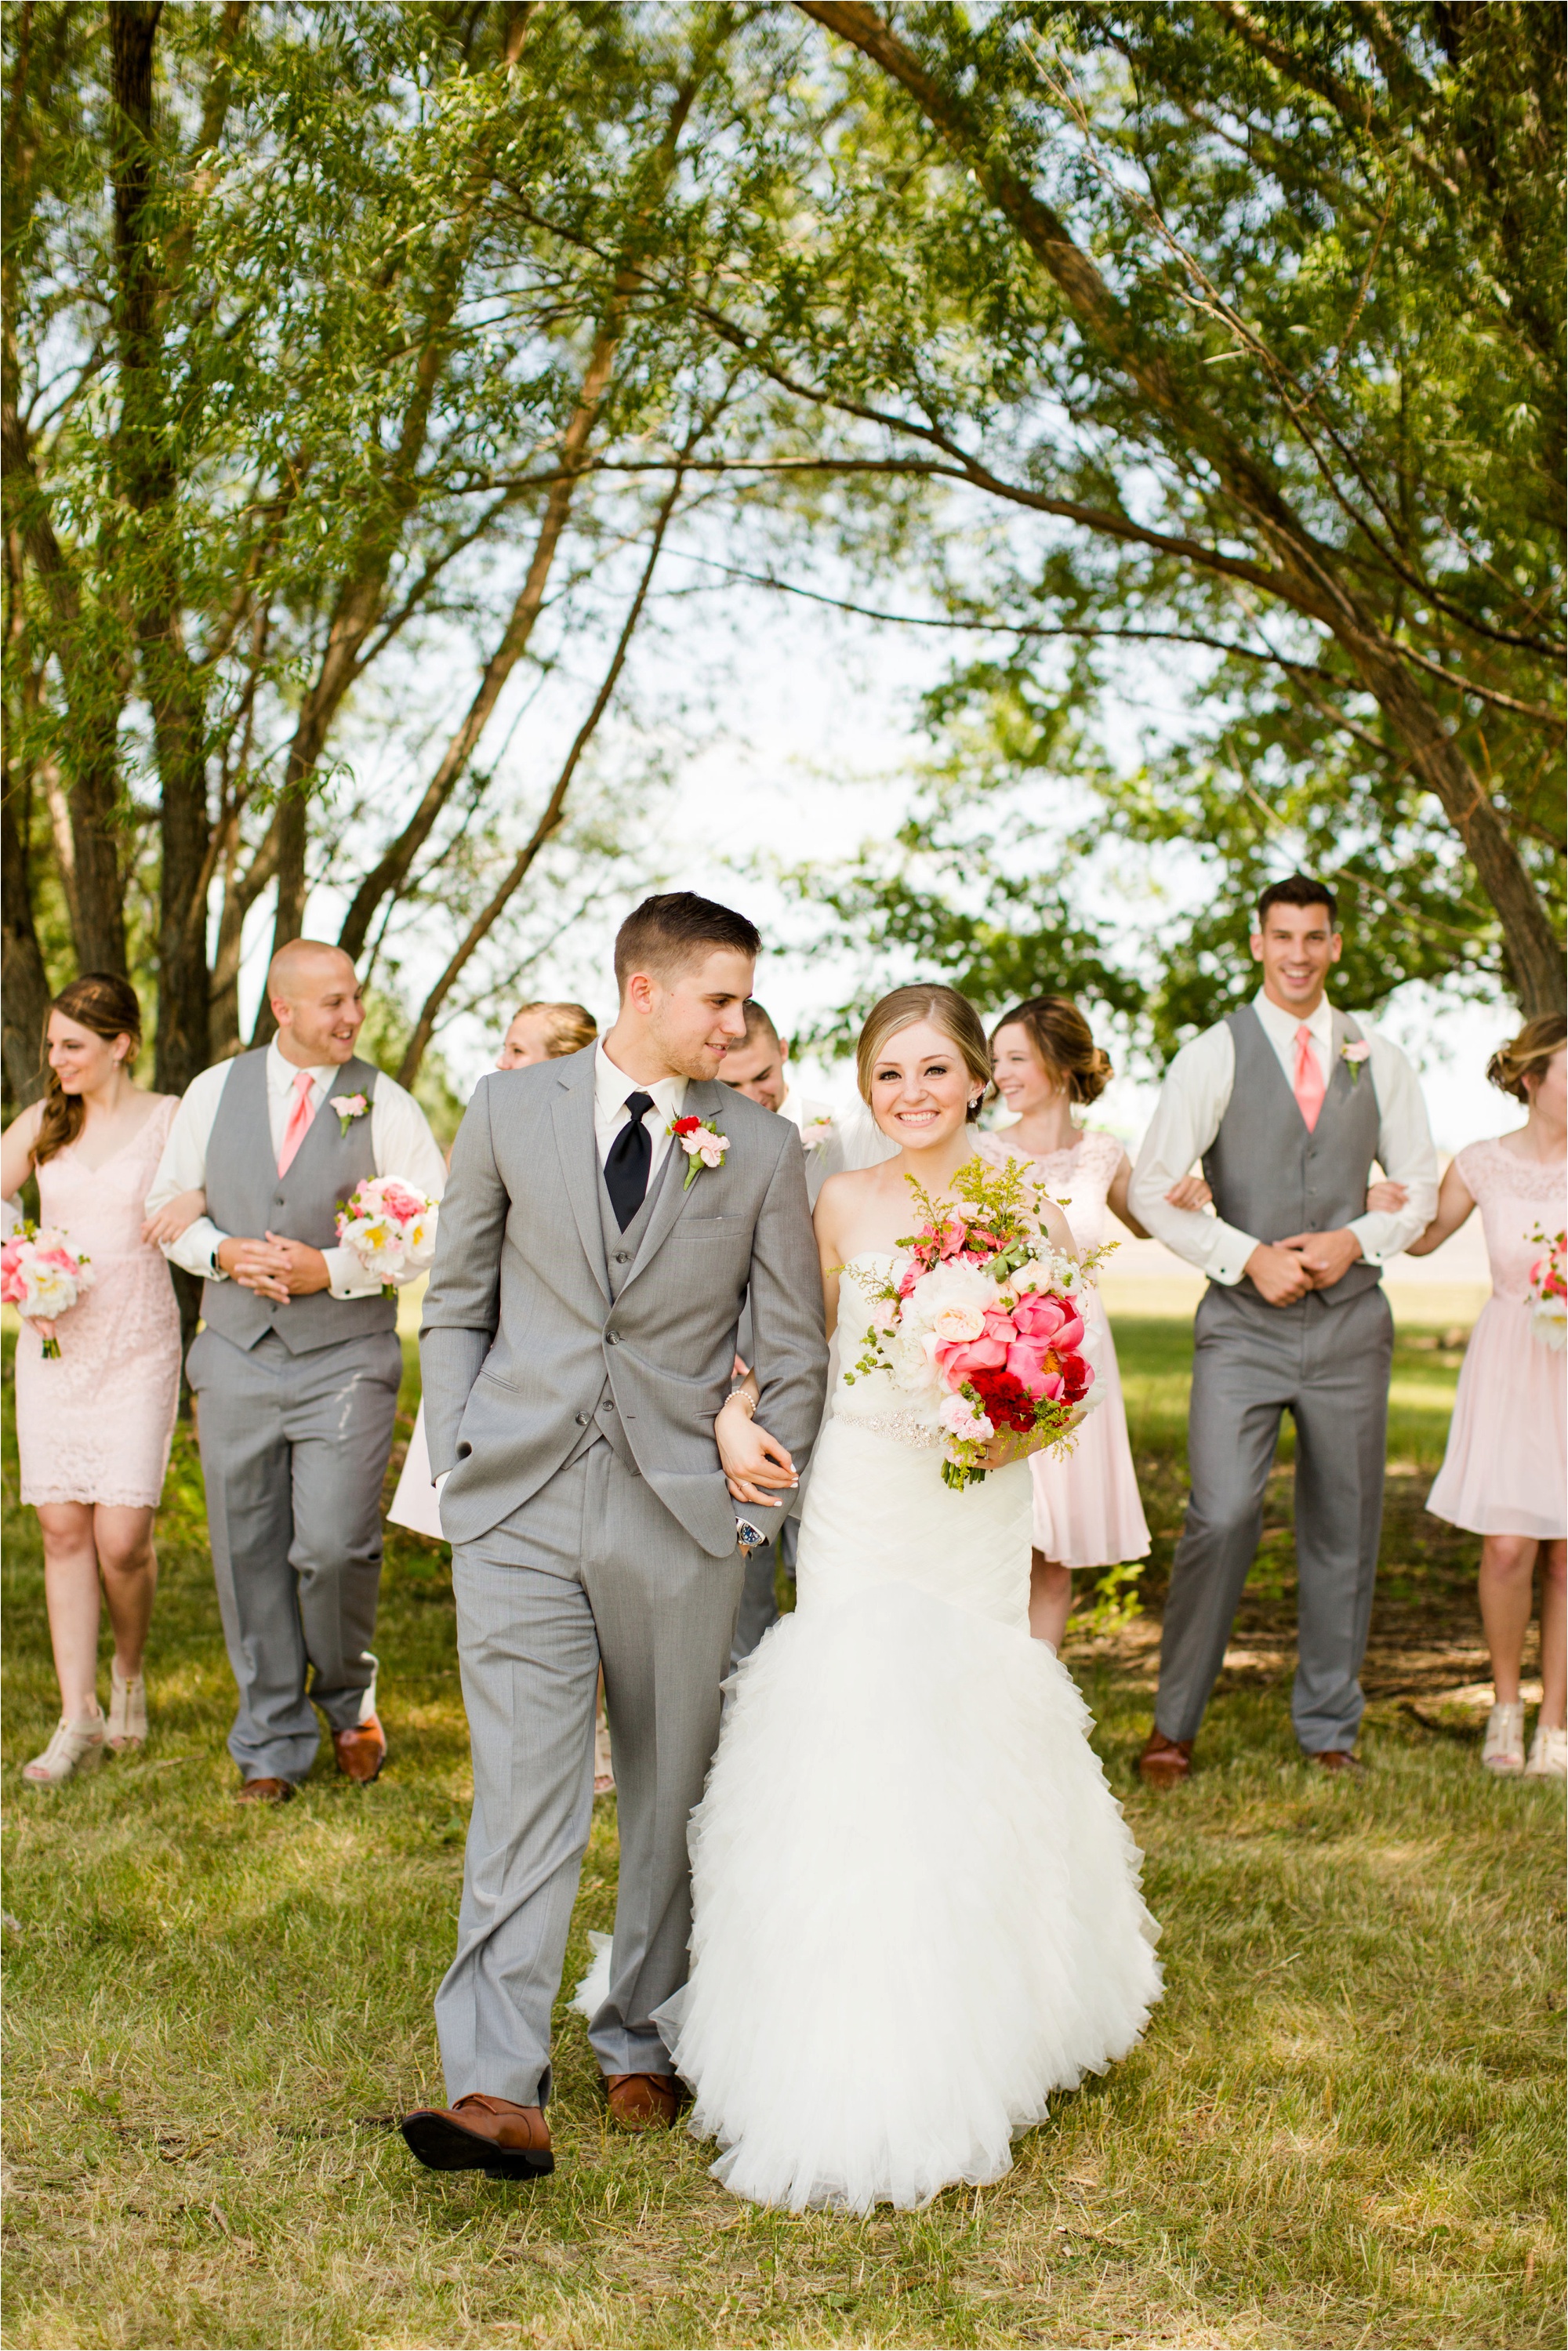 Caitlin and Luke Photography, Bloomington Normal Wedding Photographers, Illinois Wedding Photographers, Illinois Husband and Wife Wedding Photography Team_0293.jpg